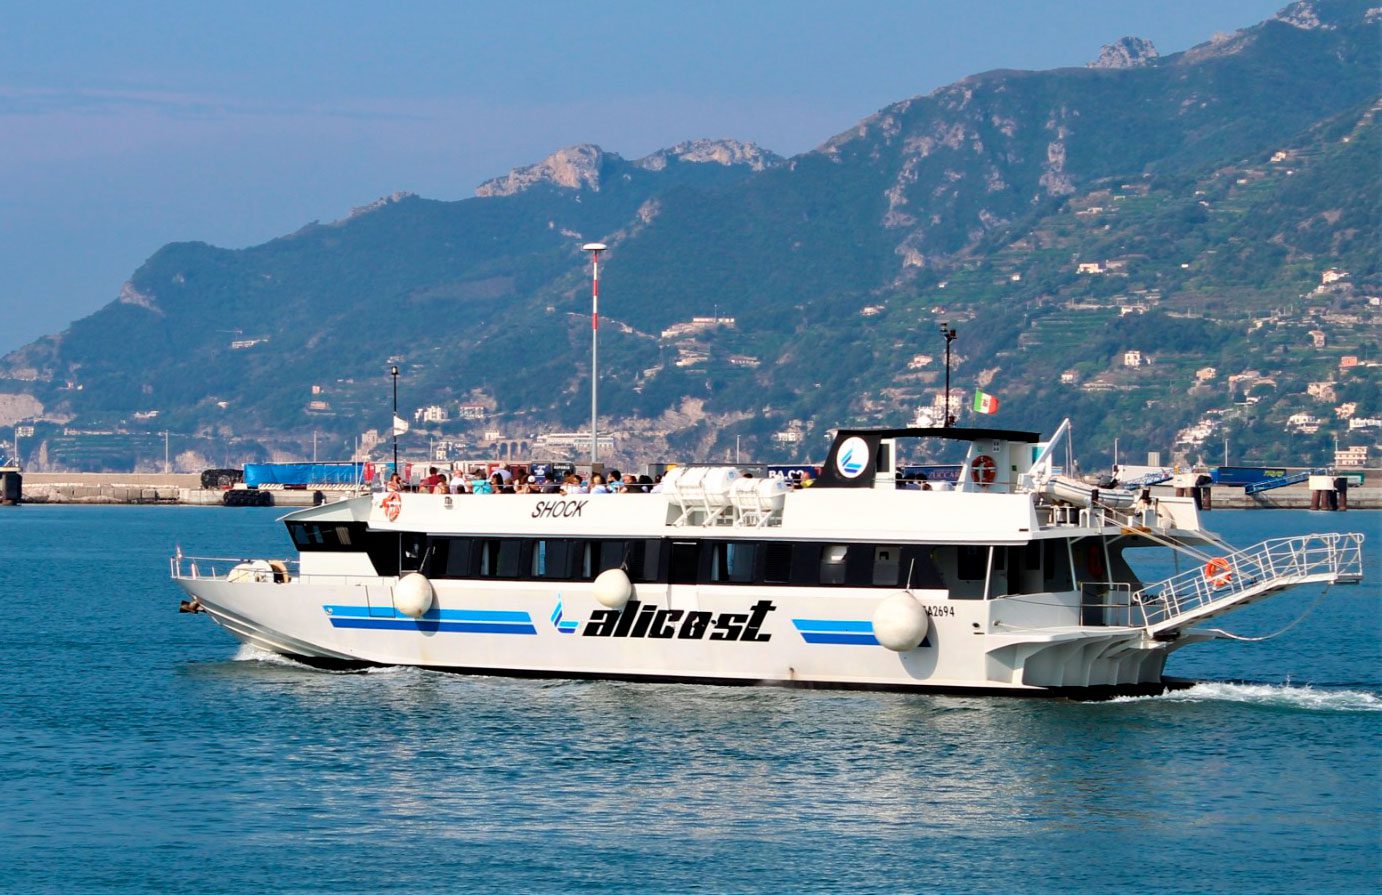 Da domenica prossima riparte il collegamento Alicost da Salerno alle Eolie - il Giornale di Salerno .it